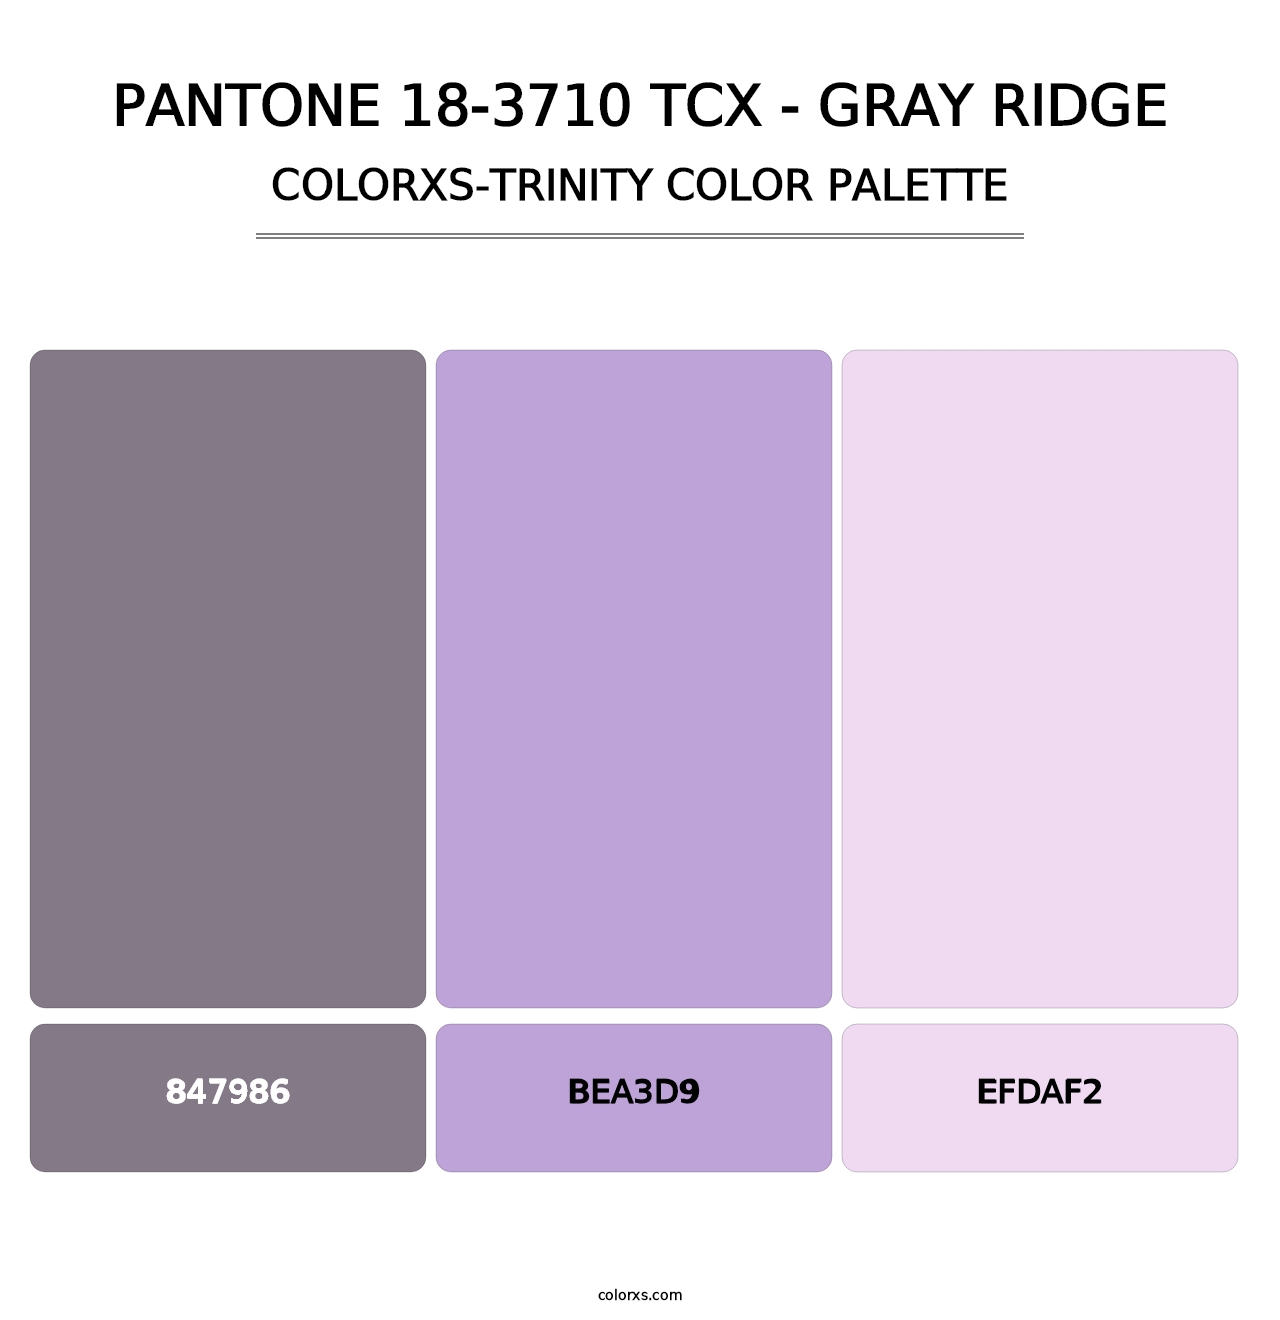 PANTONE 18-3710 TCX - Gray Ridge - Colorxs Trinity Palette